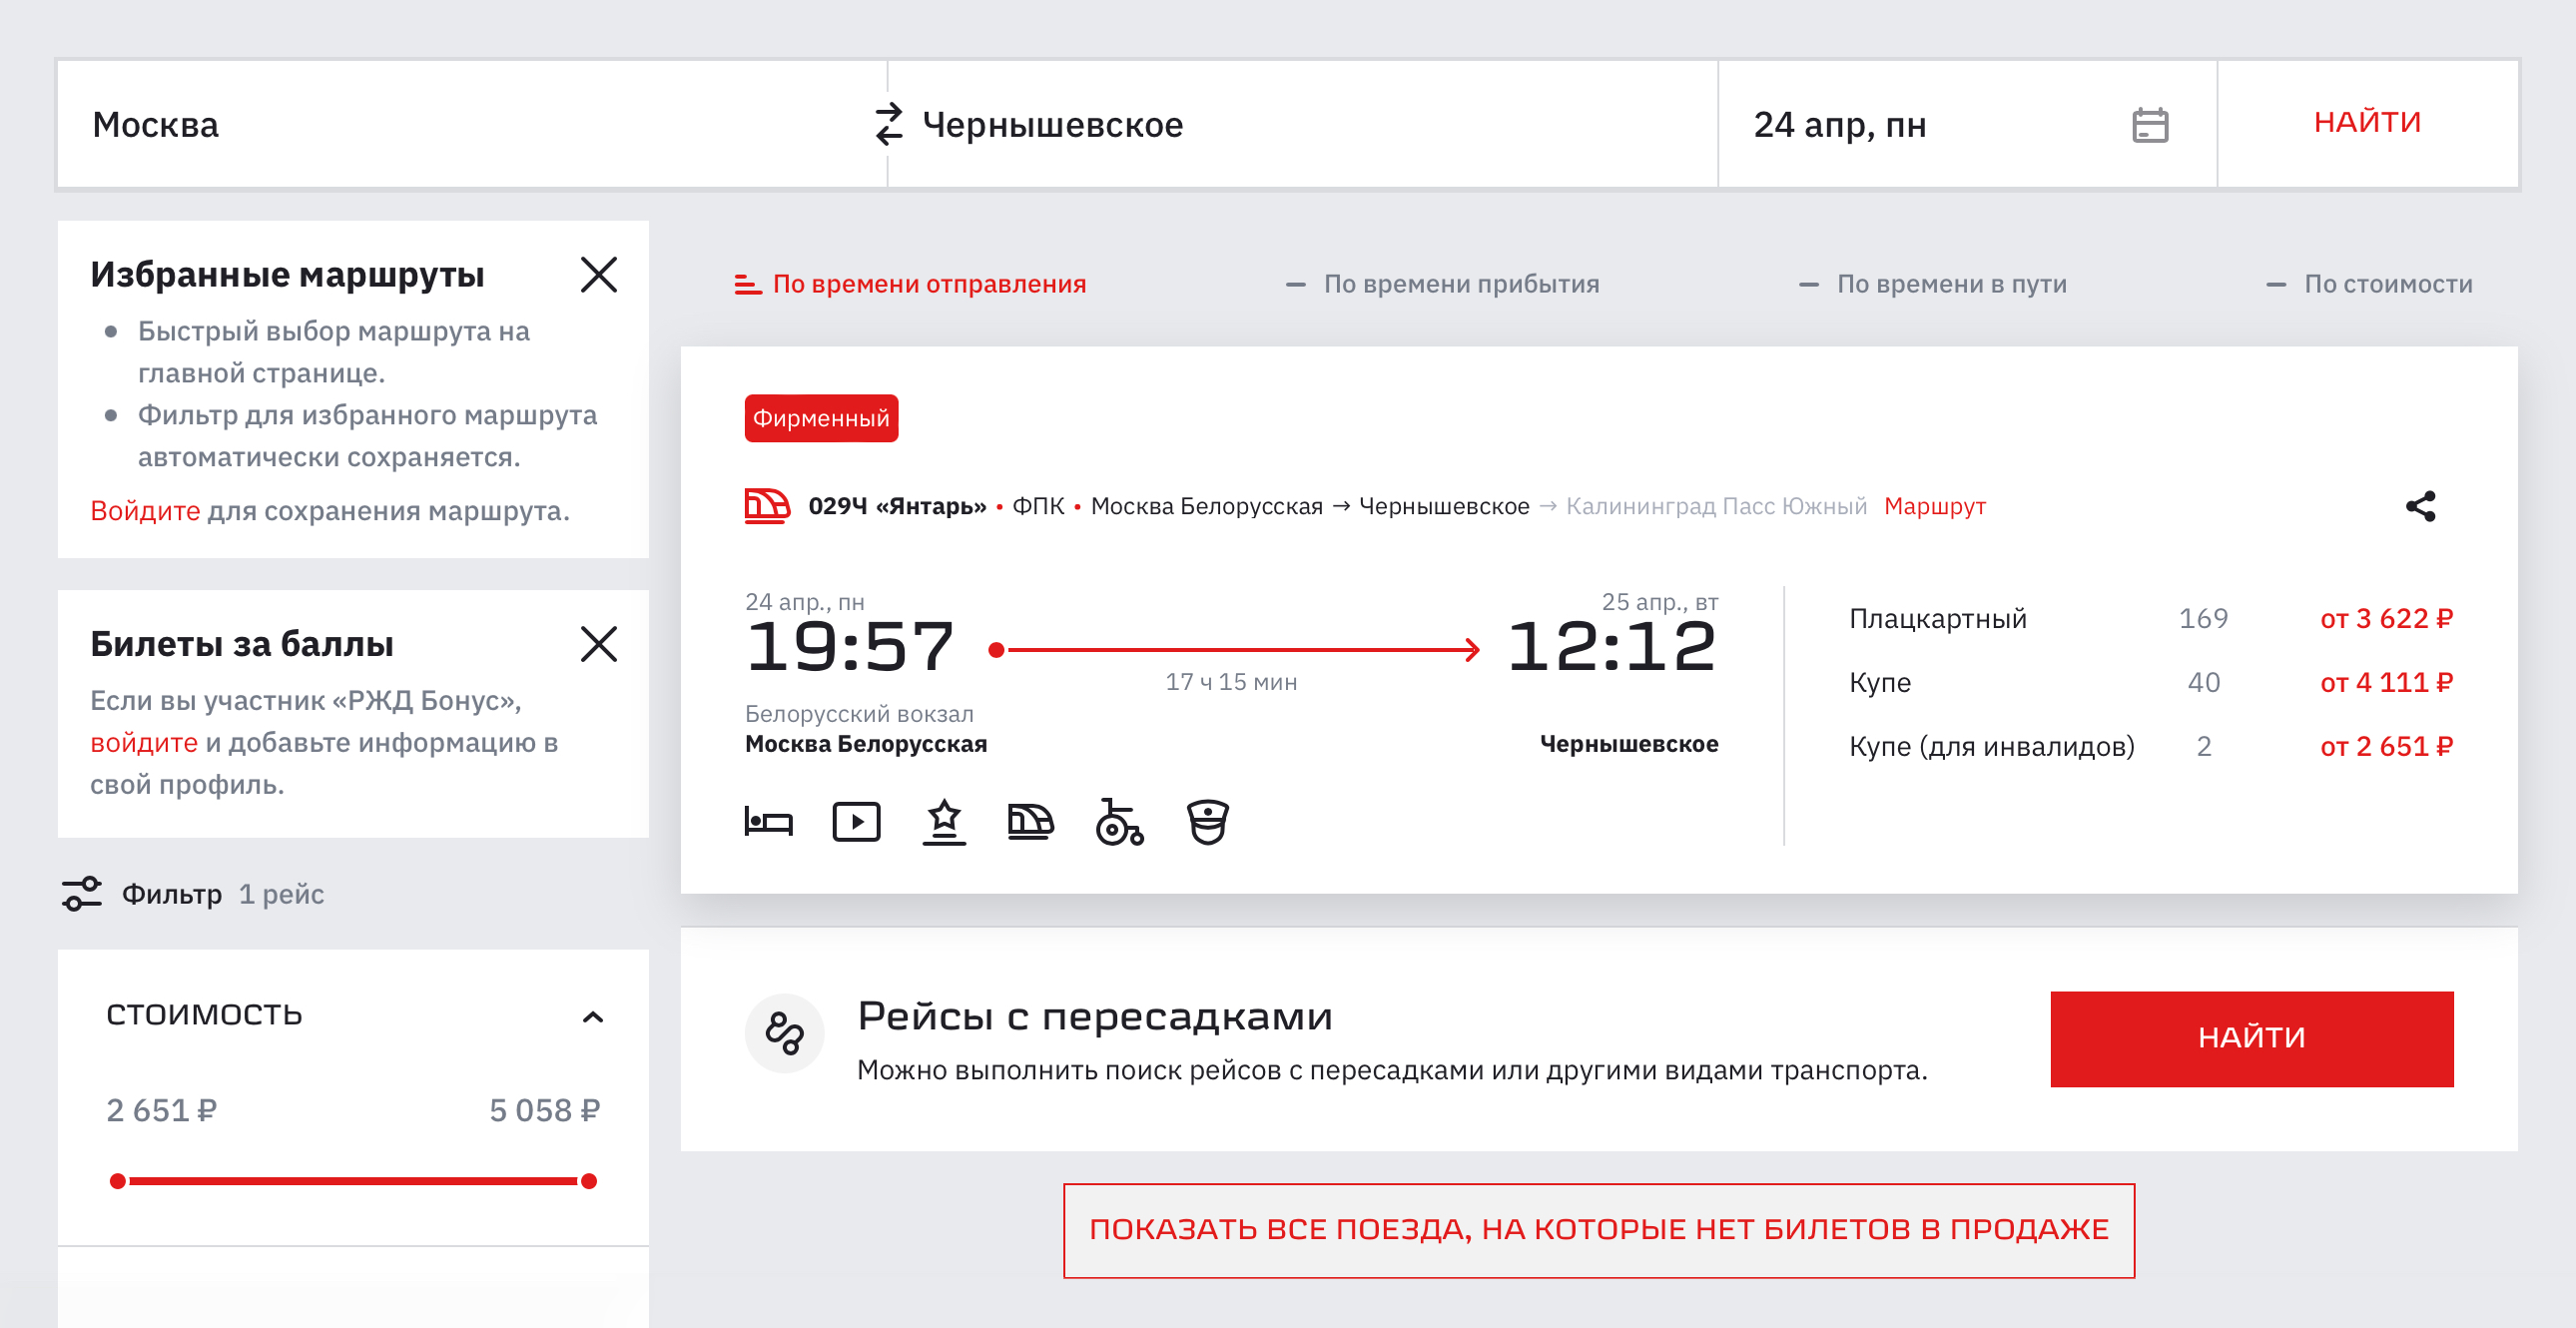 В расписании указано, что на станцию Чернышевское поезд прибывает в 12:12. Но выходить в Кяне нужно будет в 07:51. Источник: rzd.ru